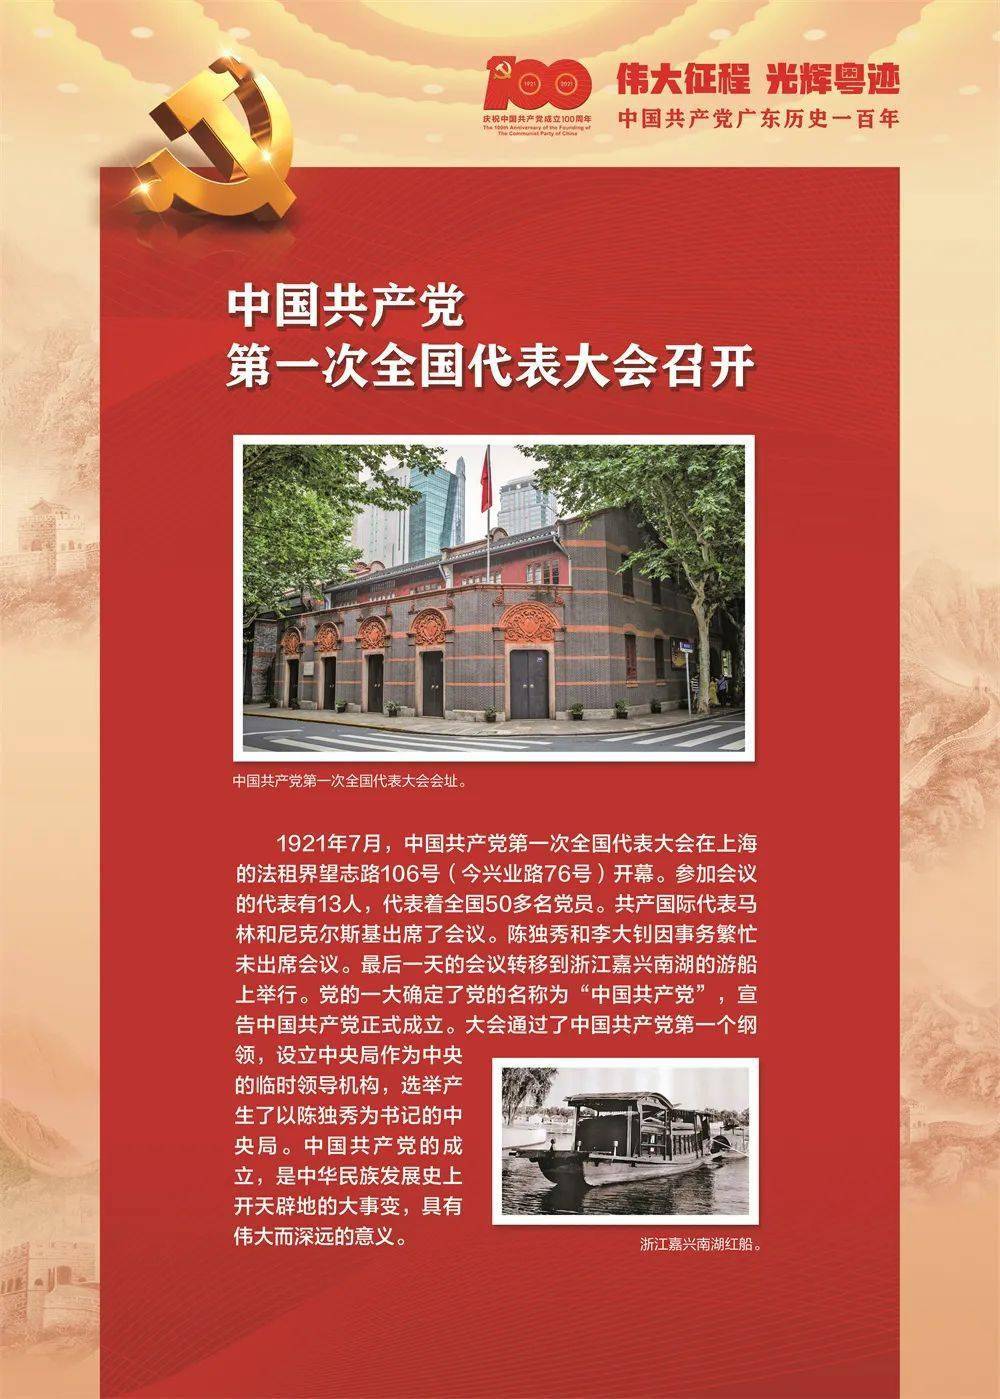 【伟大征程 光辉粤迹】中国共产党广东历史一百年(2)